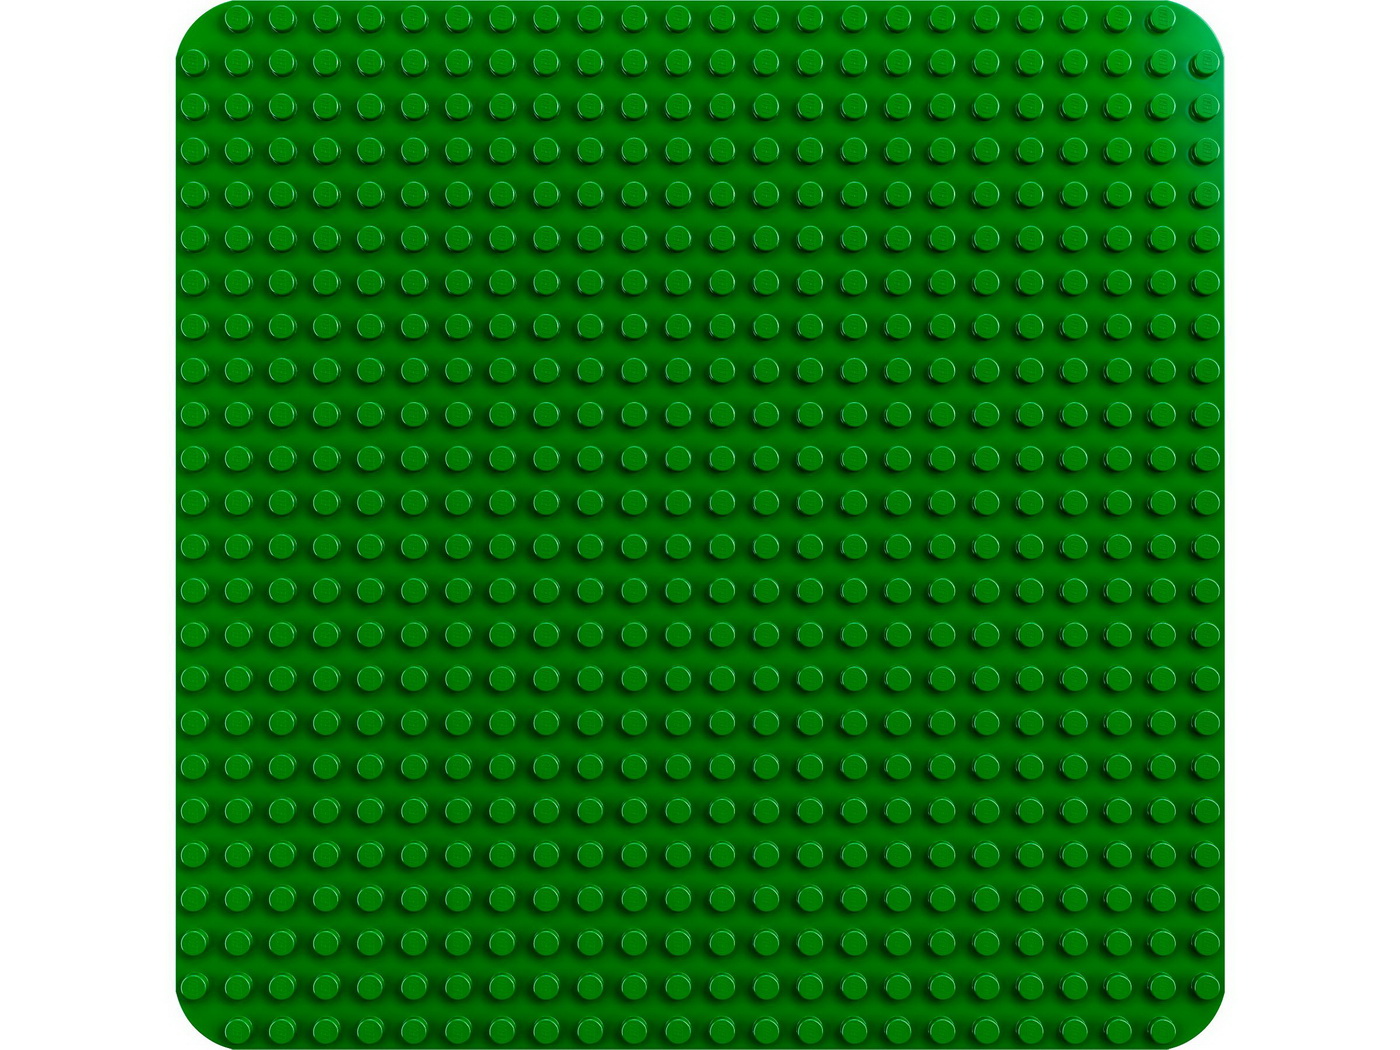 Lego Duplo Placa De Constructie Verde 10980